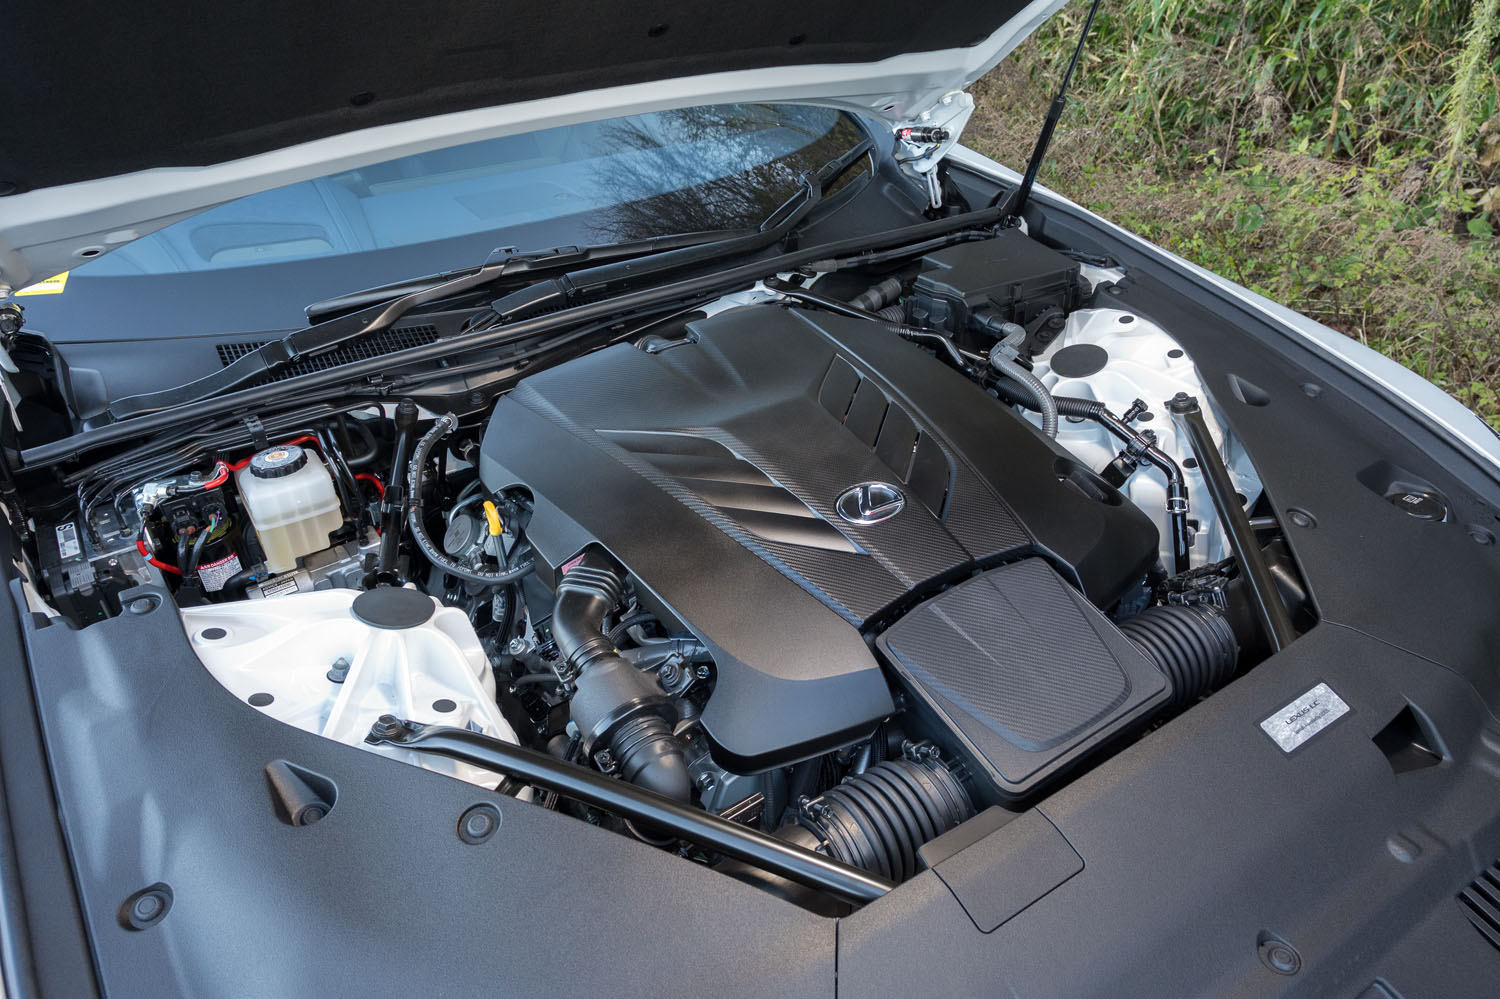 5リッターV8自然吸気エンジンは最高出力477PS、最大トルク540N・mを発生。“EDGE”には回転バランスどりとフリクション低減を図ったスペシャルユニットが積まれる。